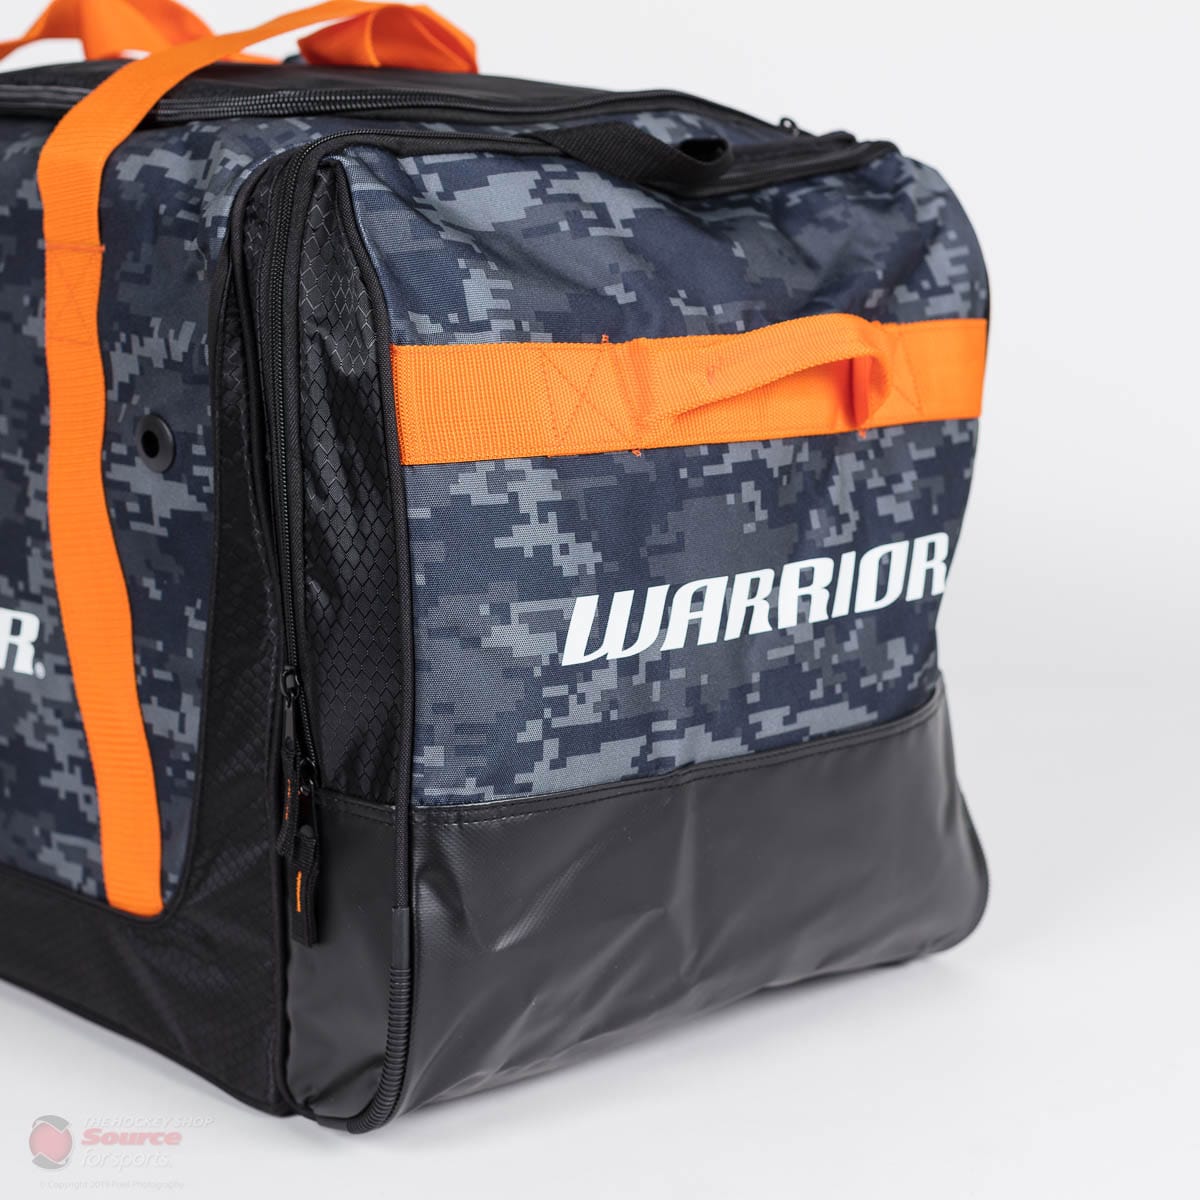 Warrior Q20 Junior Carry Hockey Bag